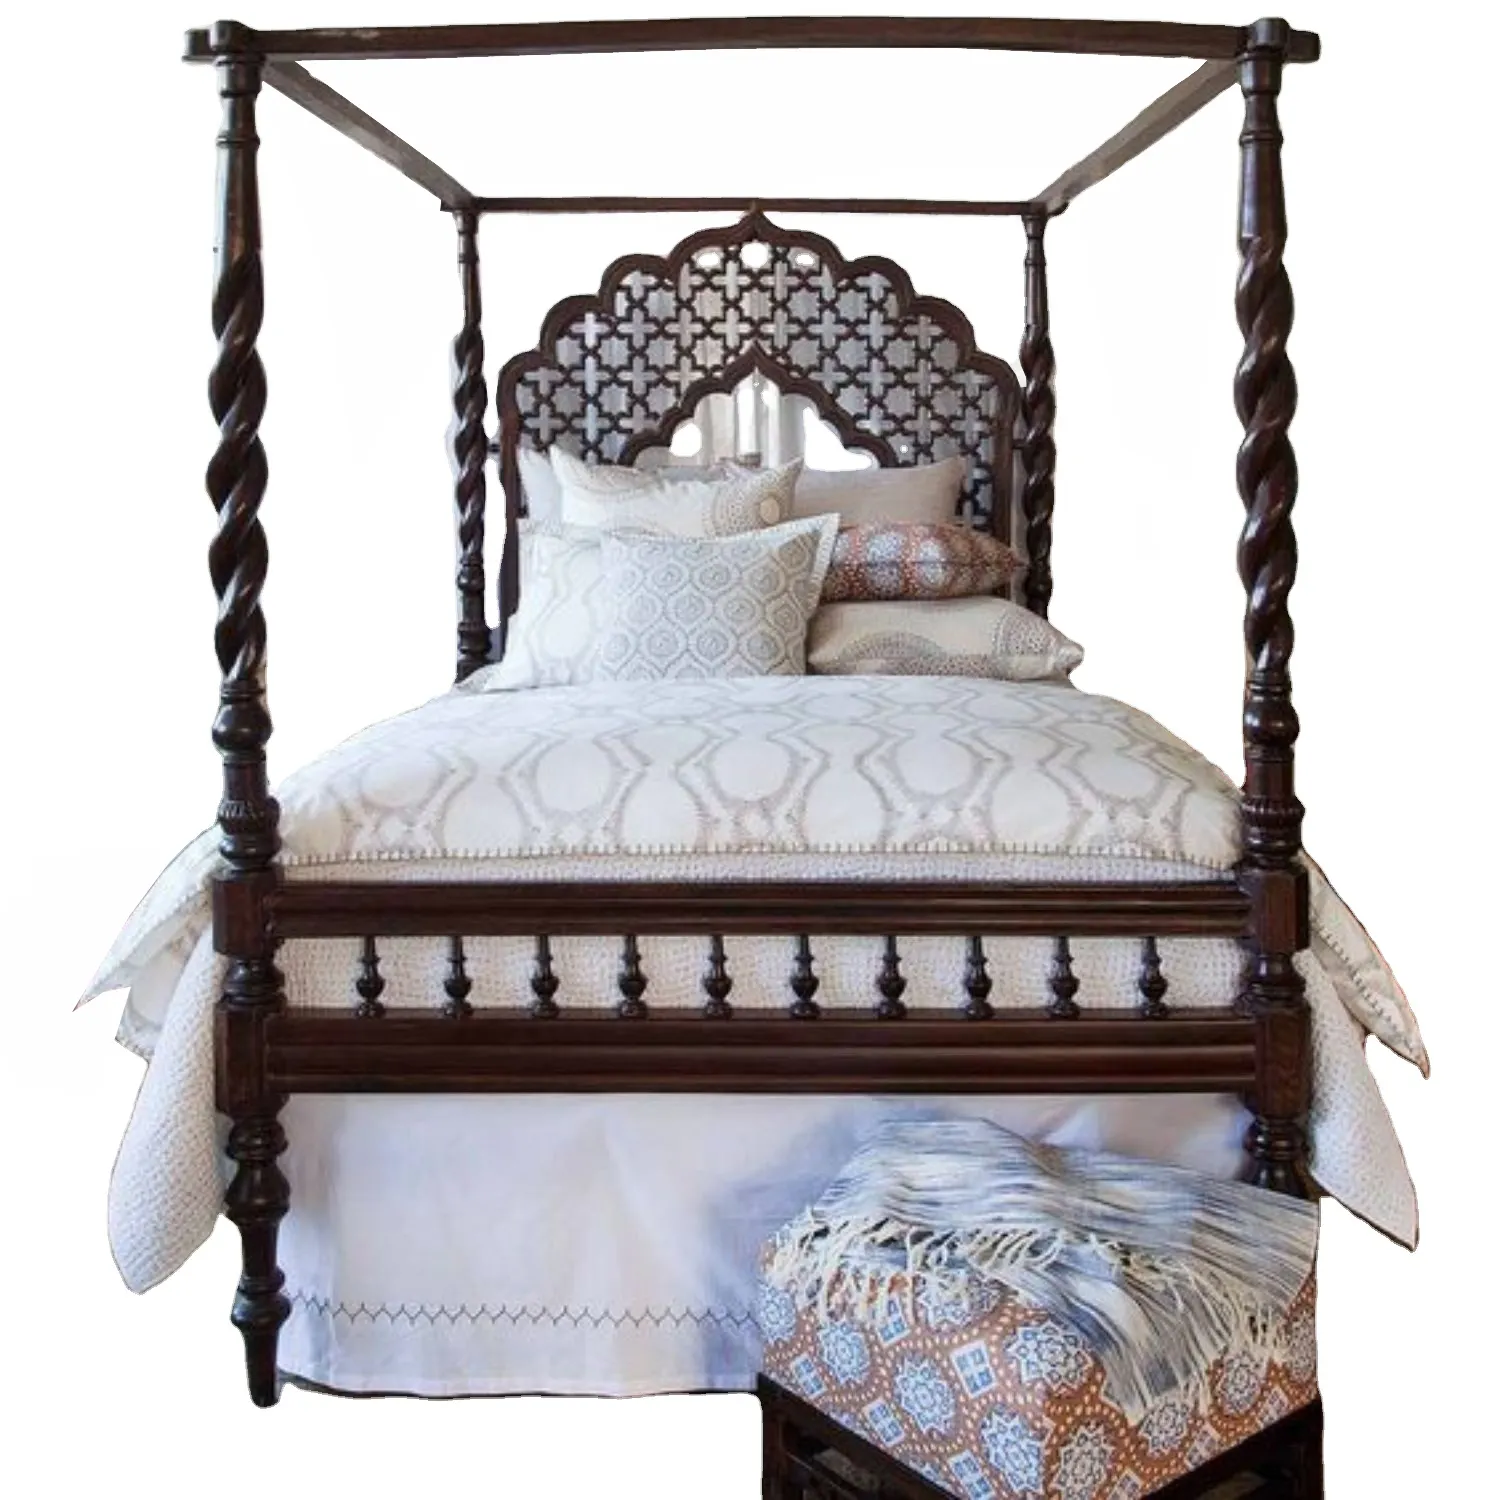 Оптовая продажа, Высококачественная современная роскошная винтажная королевская кровать, мебель для спальни, американская мировая Ремесленная кровать, традиционная деревянная кровать с плакатом